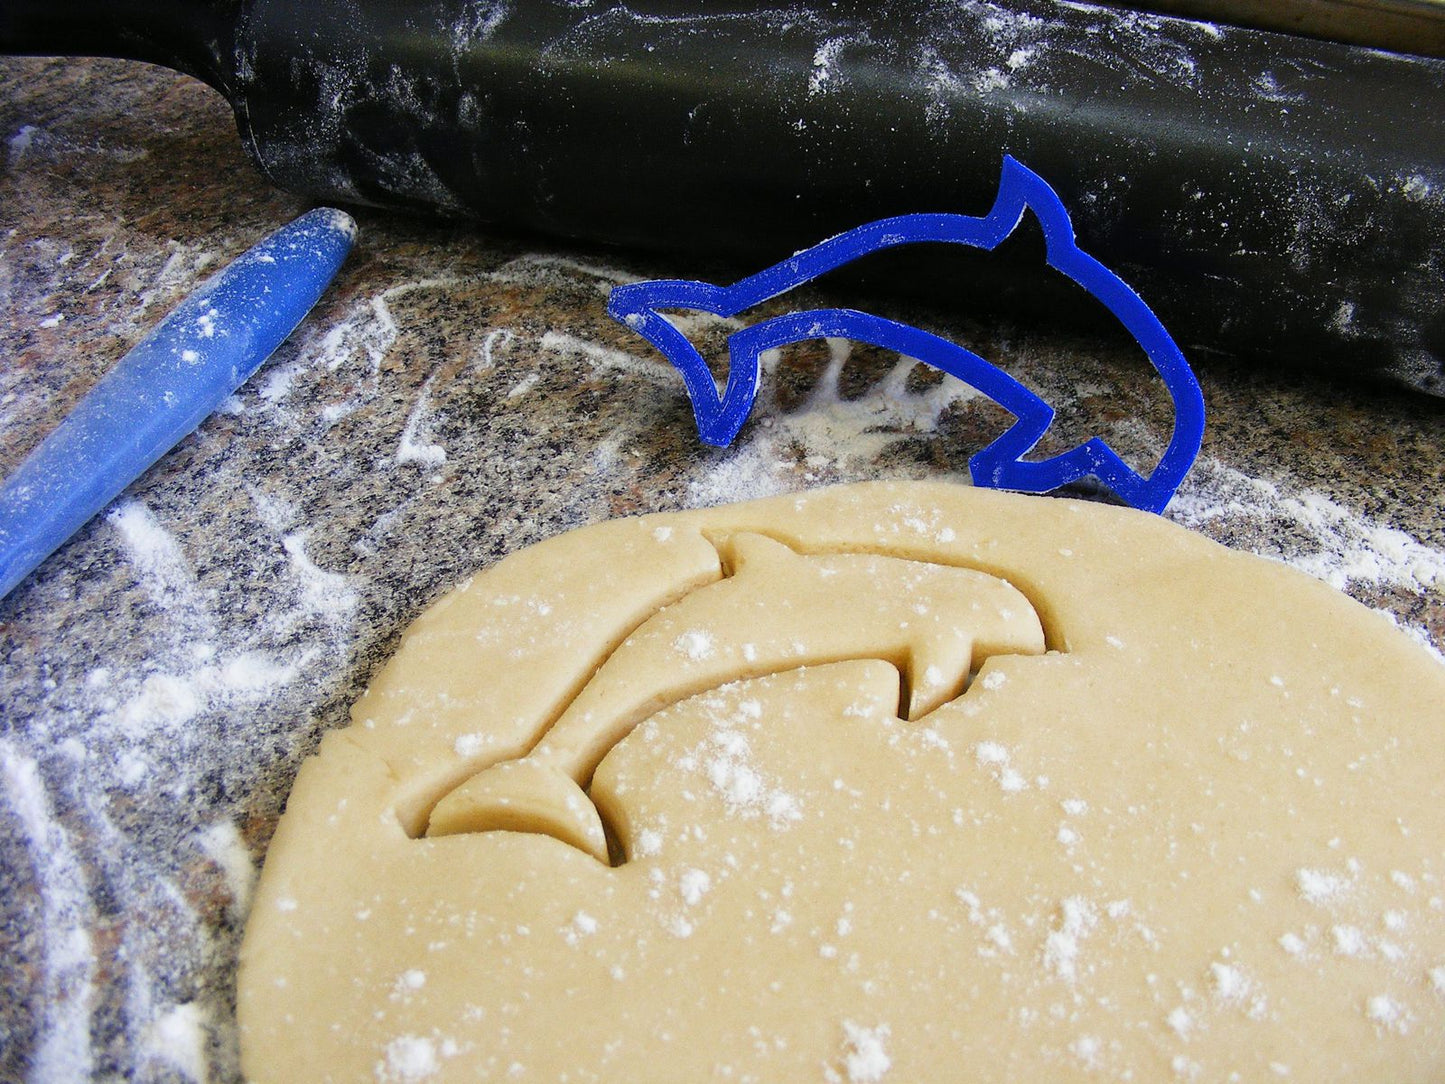 Aquarium Ocean Creatures Fish Sea Horse Shark Set Of 6 Cookie Cutters USA PR1036